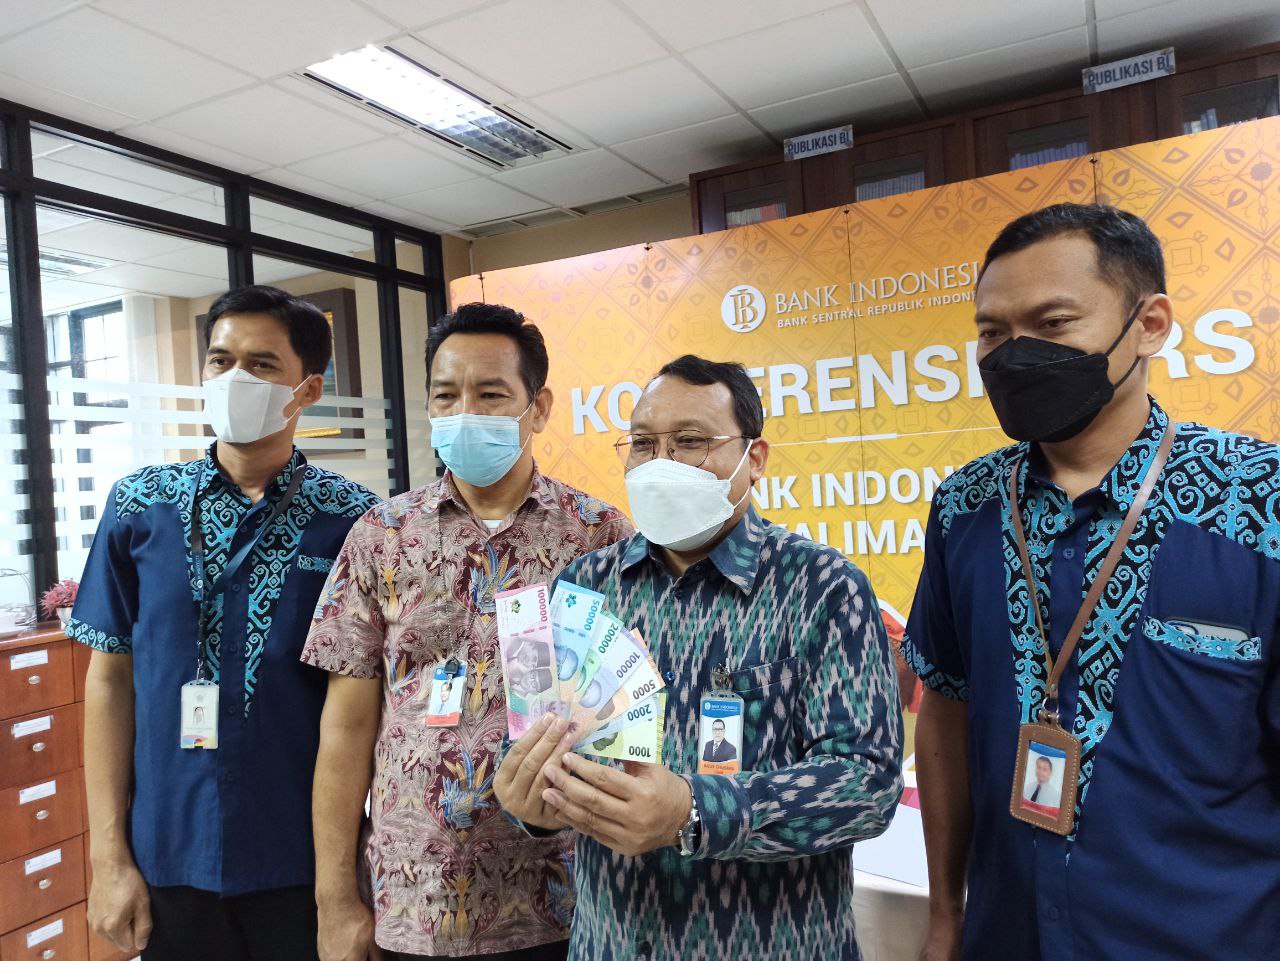 Bank Indonesia baru saja merilis uang Rupiah kertas tahun emisi 2022 pada 17 Agustus 2022. Uang rupiah baru ini sudah berlaku dan siap untuk ditukarkan masyarakat.